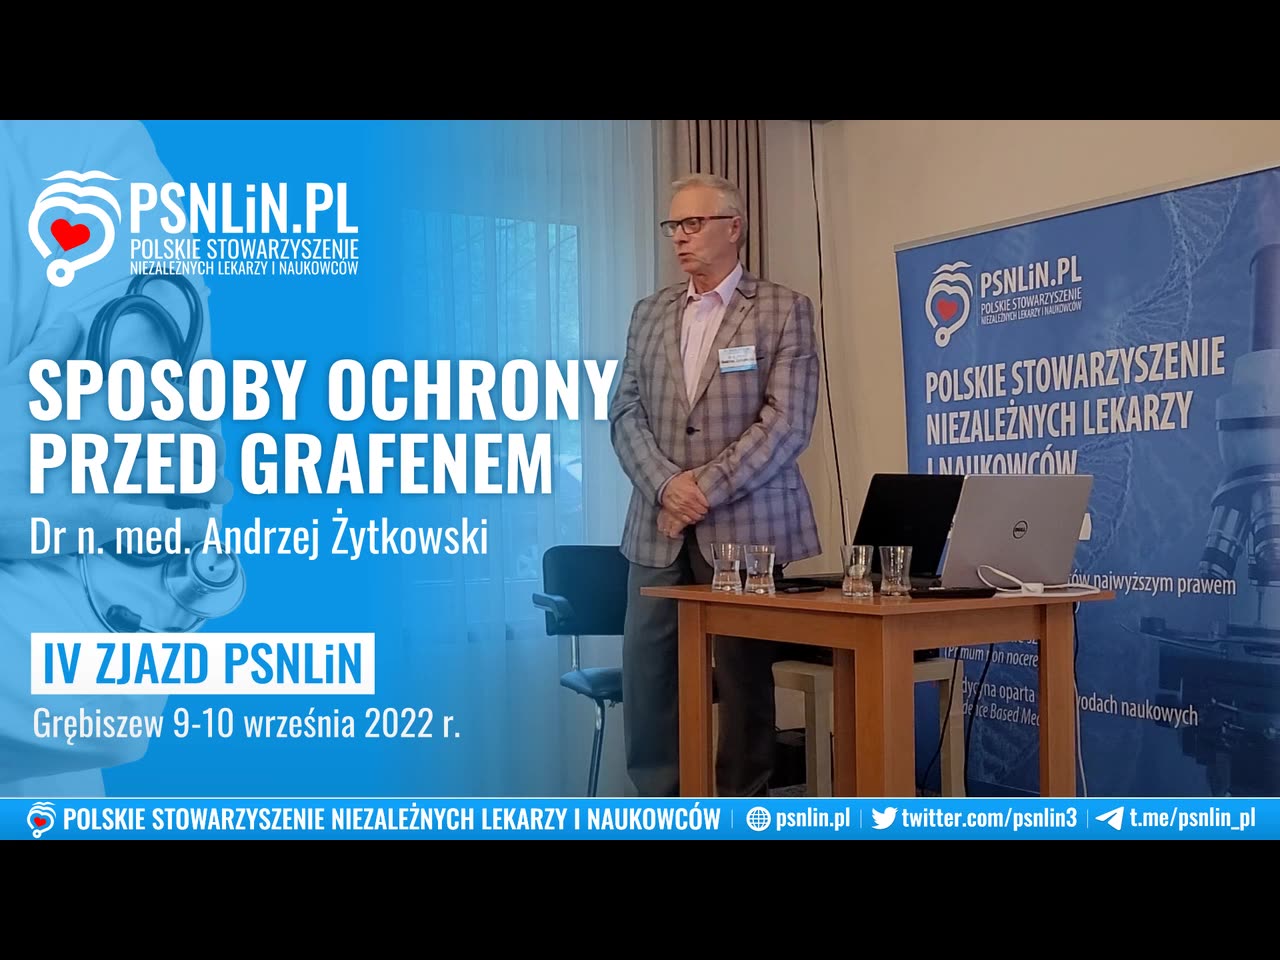 Sposoby ochrony przed grafenem - dr n. med. Andrzej Żytkowski PSNLiN